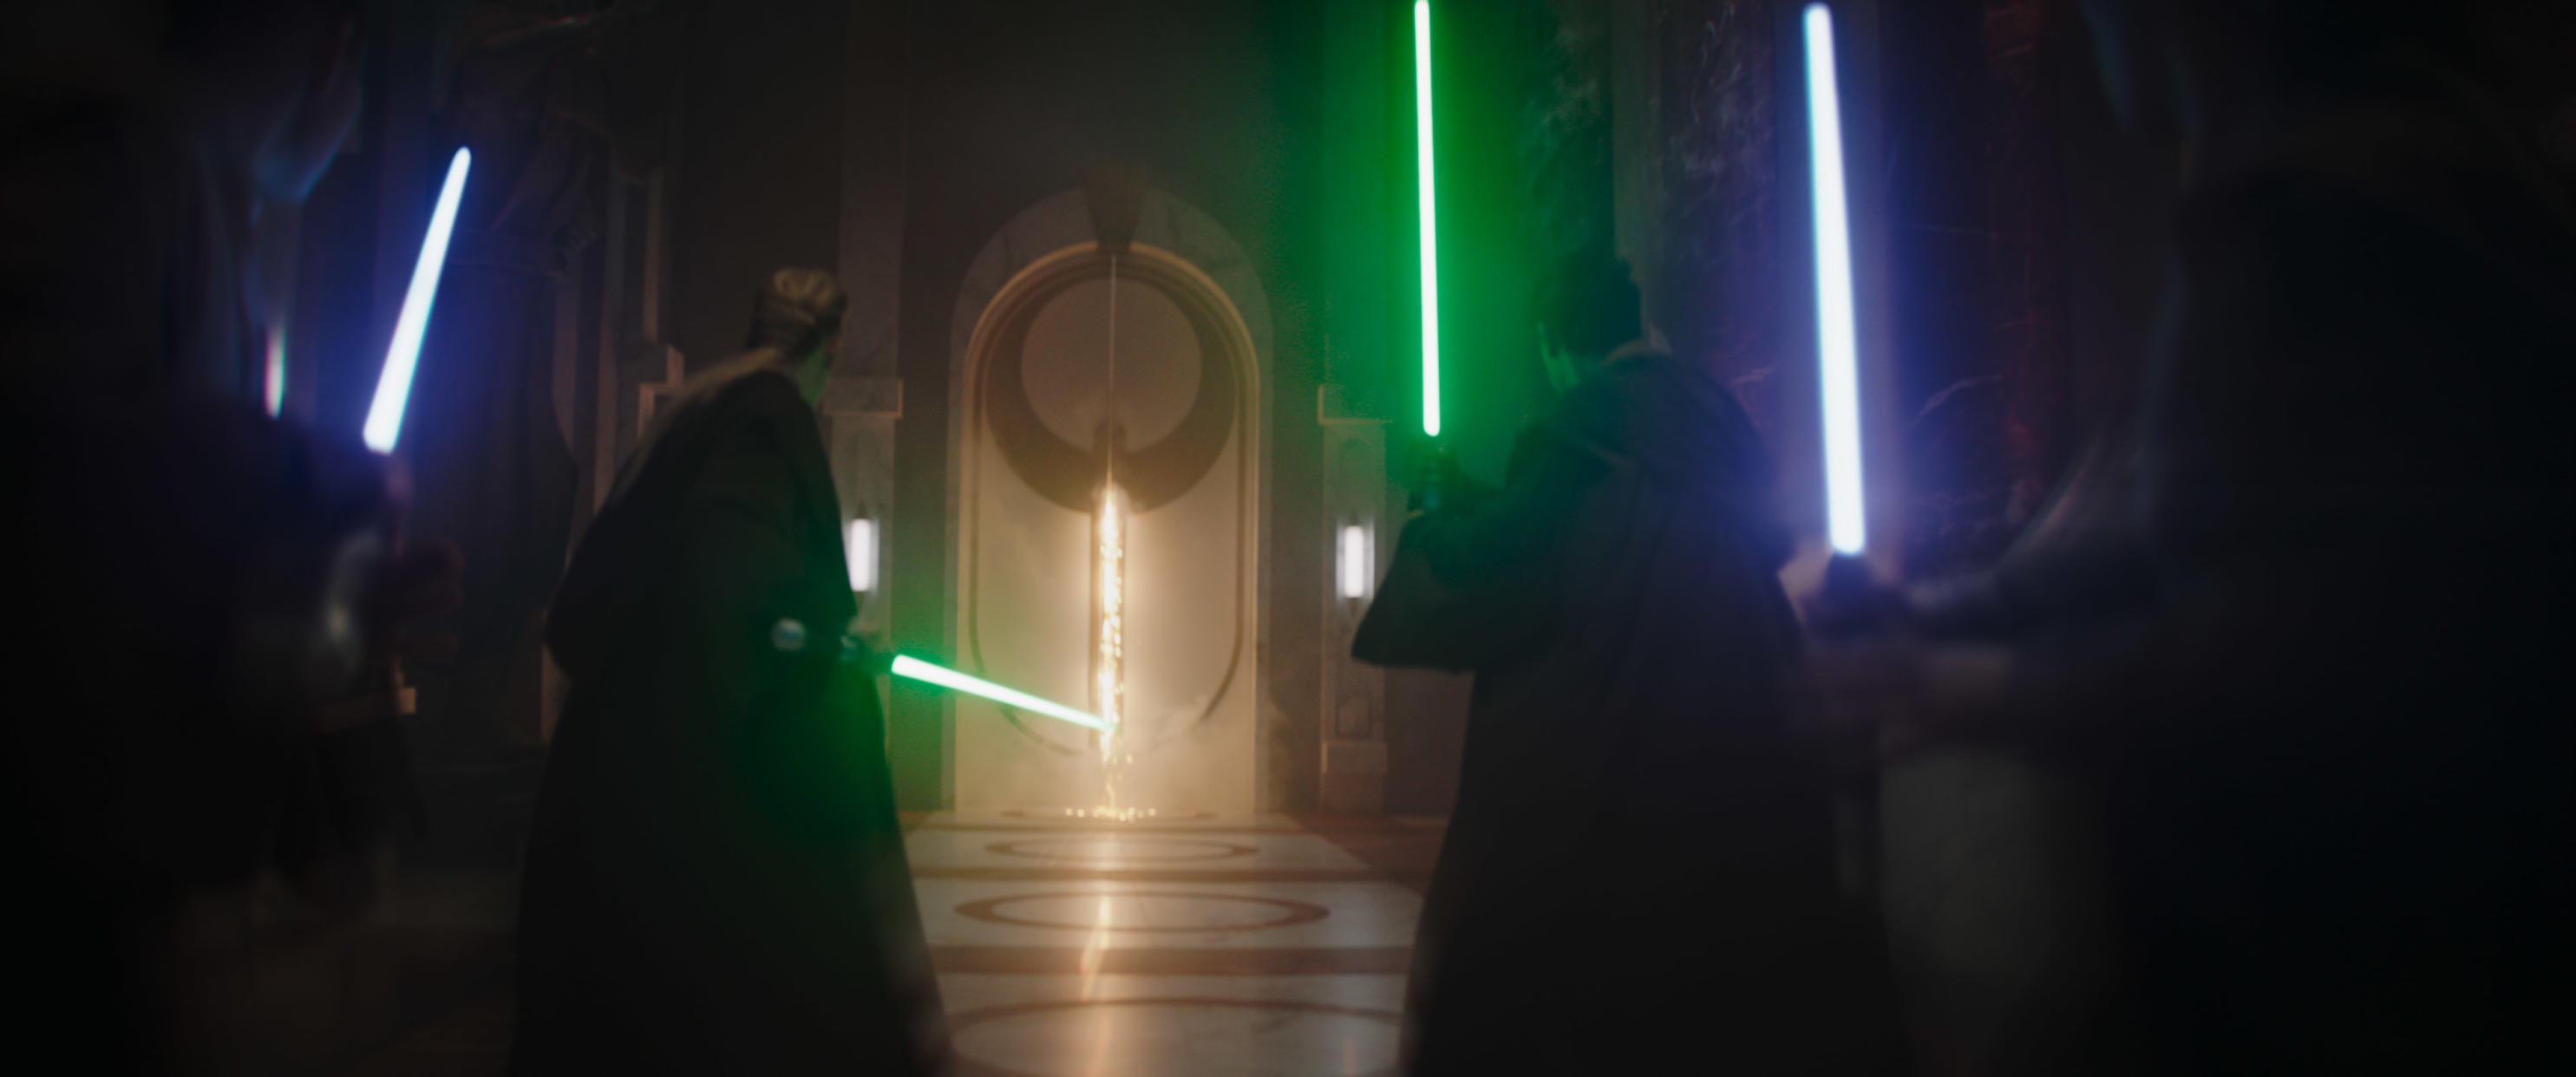 Jedi in a scene from The Mandalorian